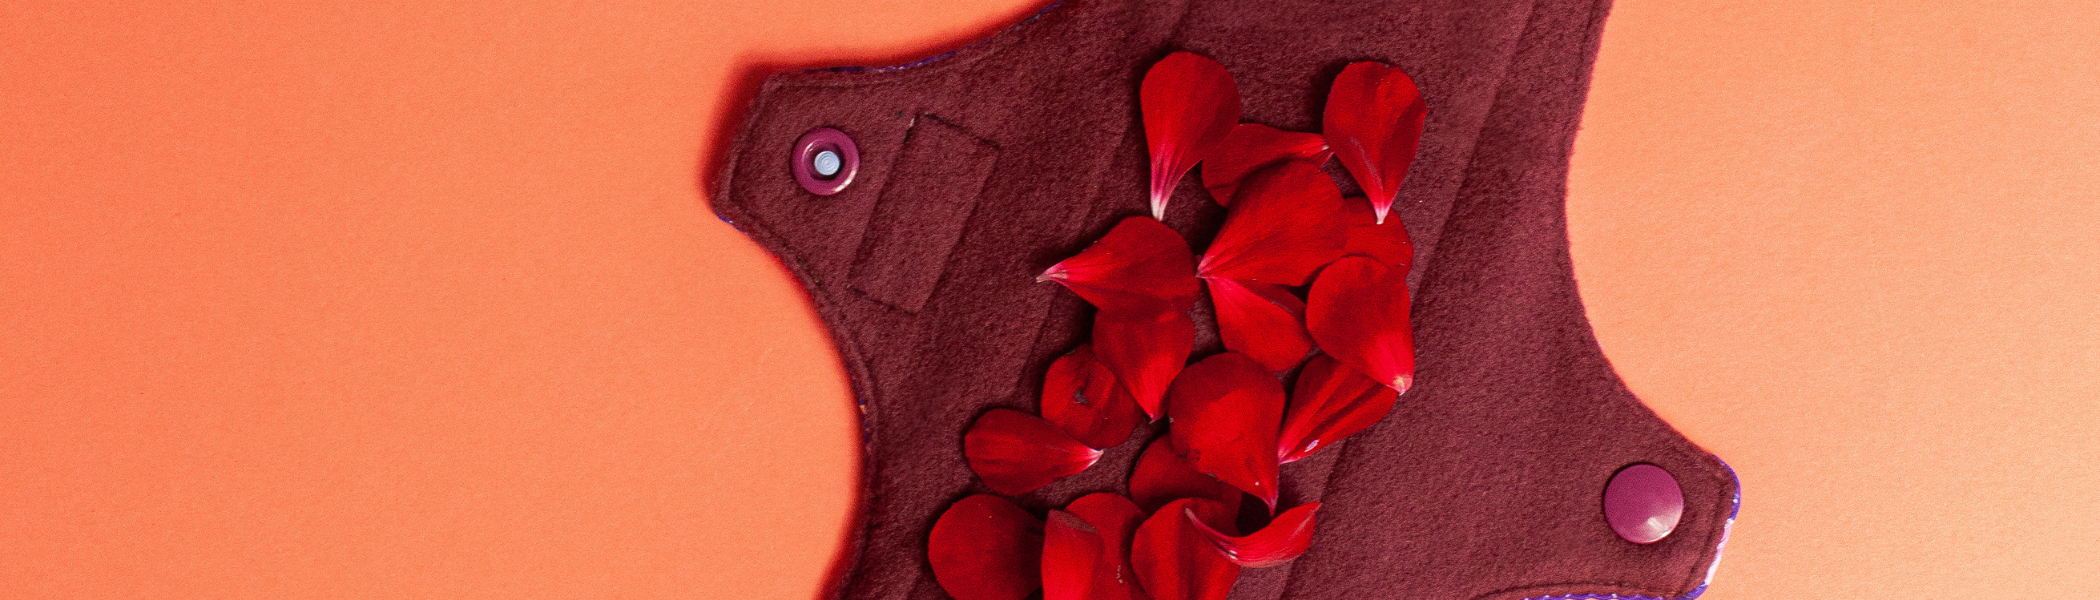 Coágulos de sangue na menstruação é normal? – Korui